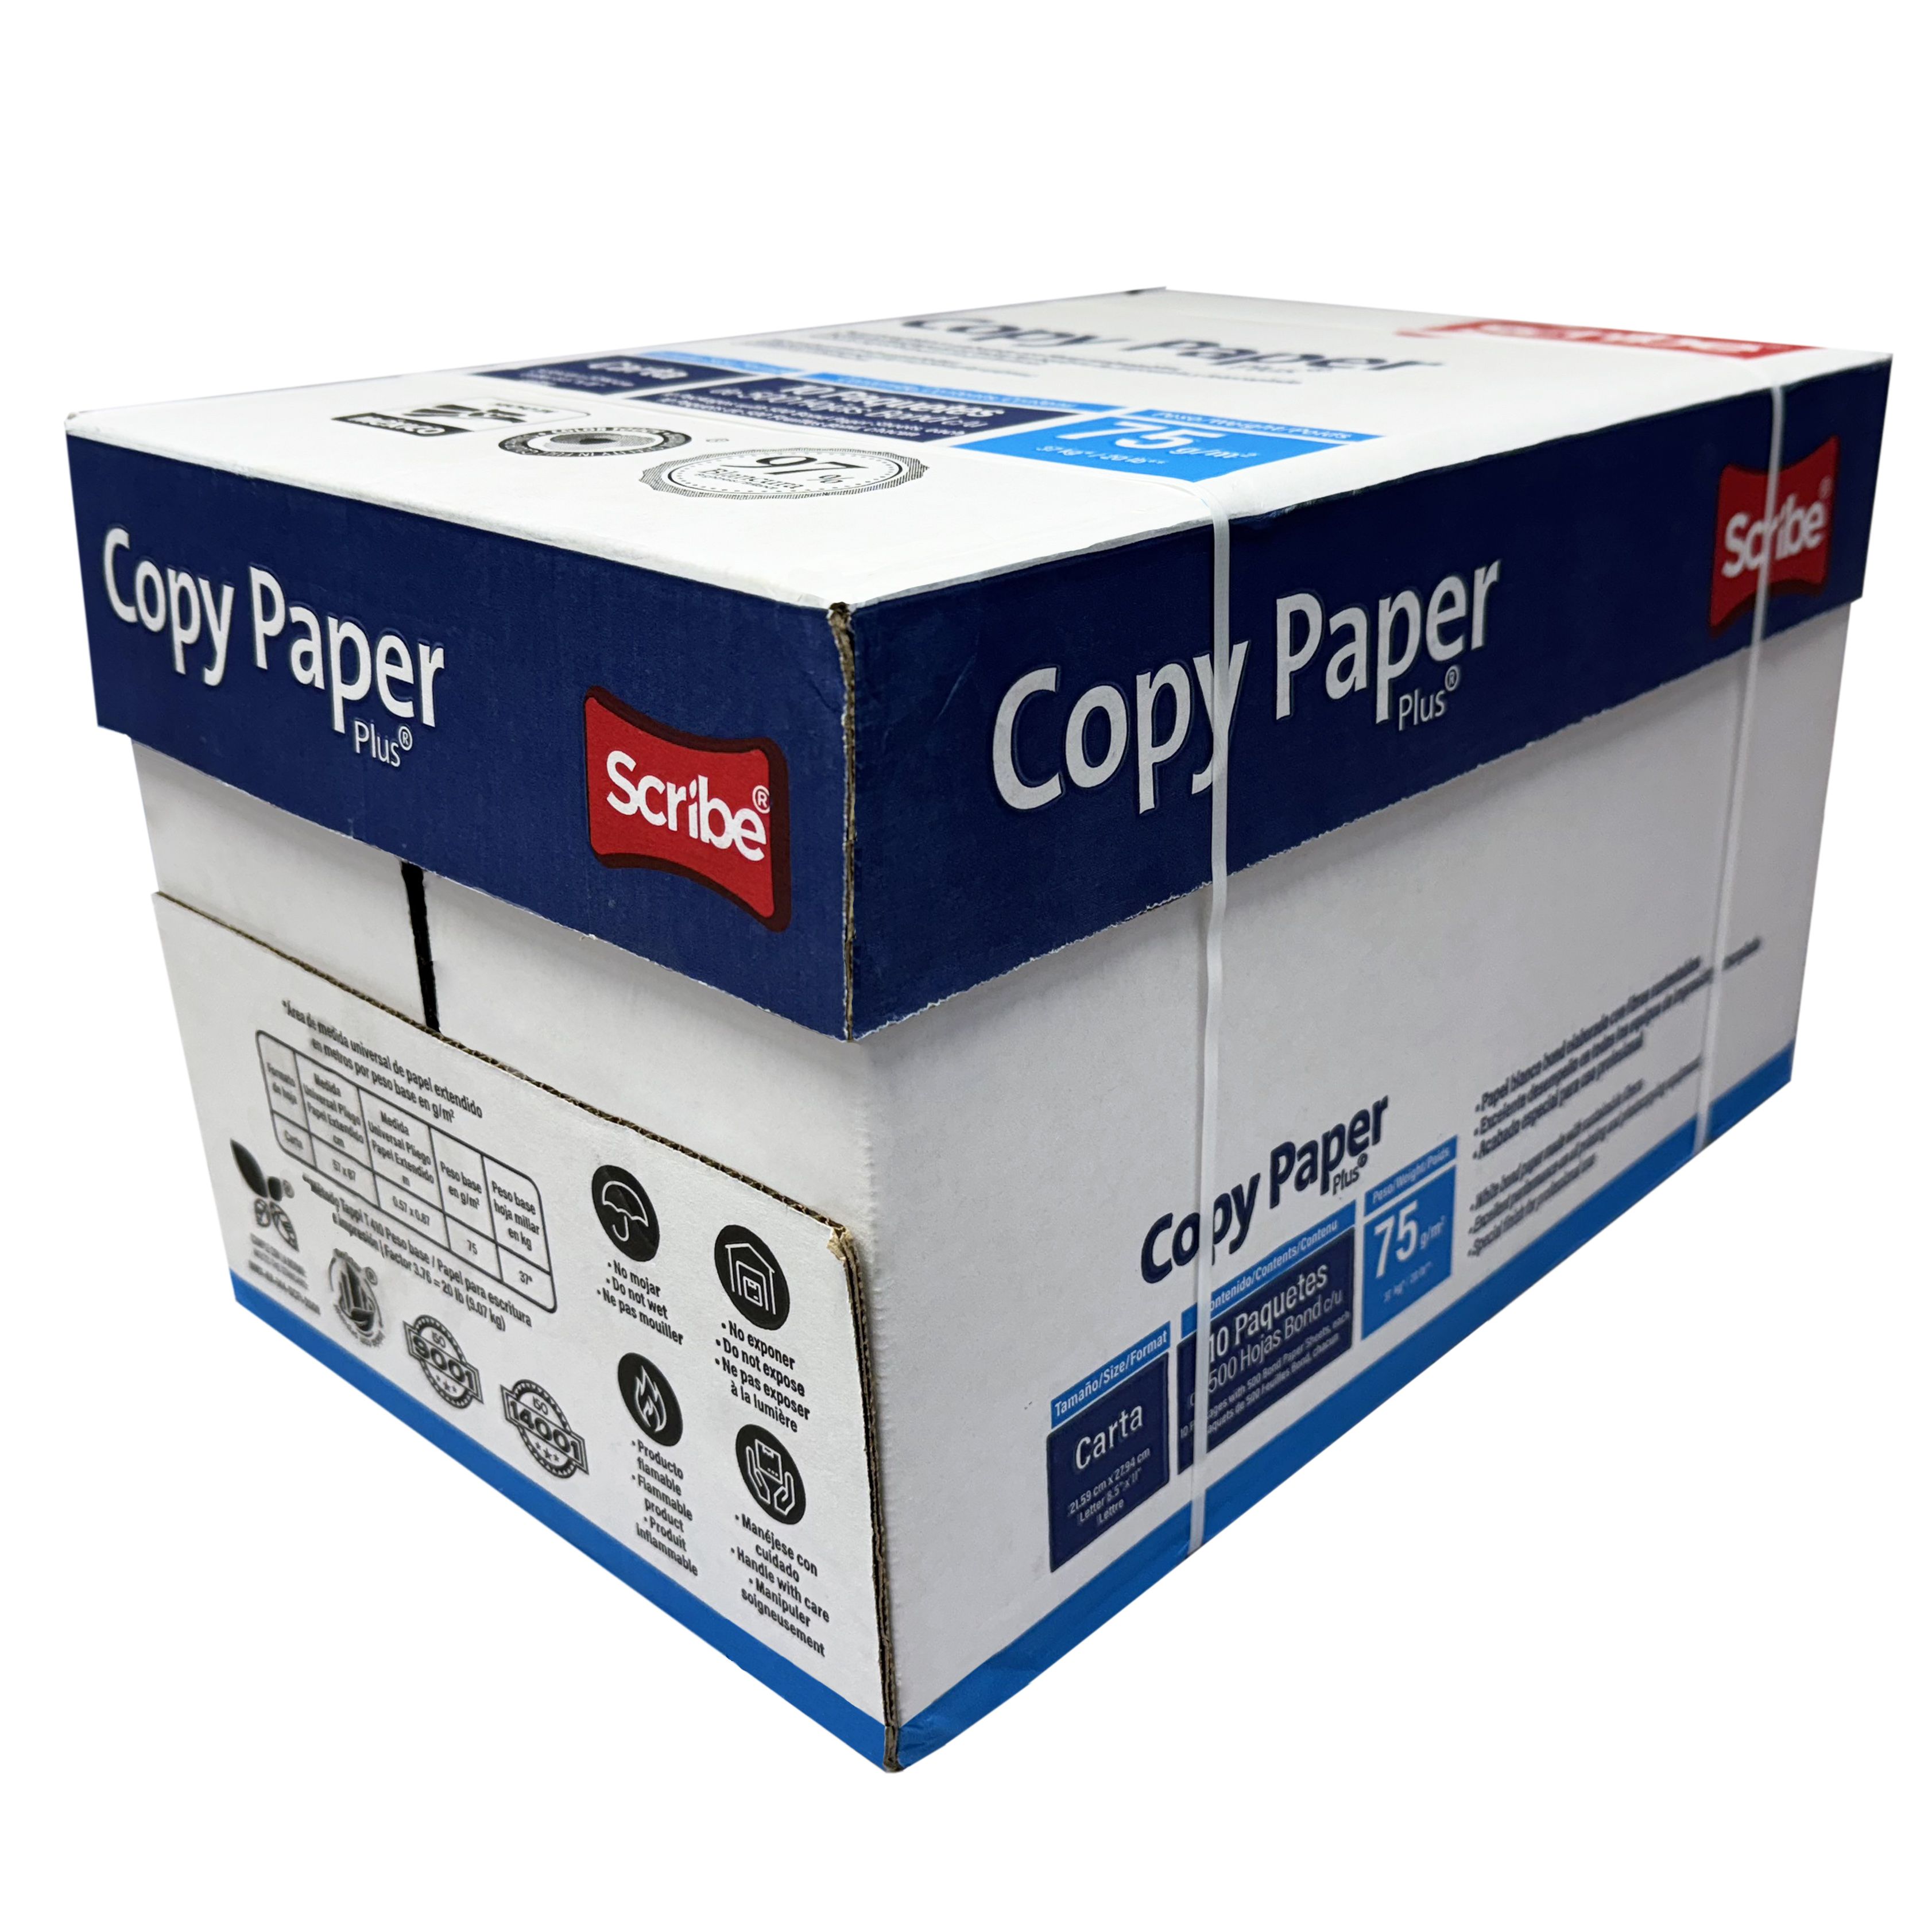 UBMOVE Multipurpose Copy Printer Paper, 8.5” x 11”, 20 lbs, White, 10 REAMS/1 Case